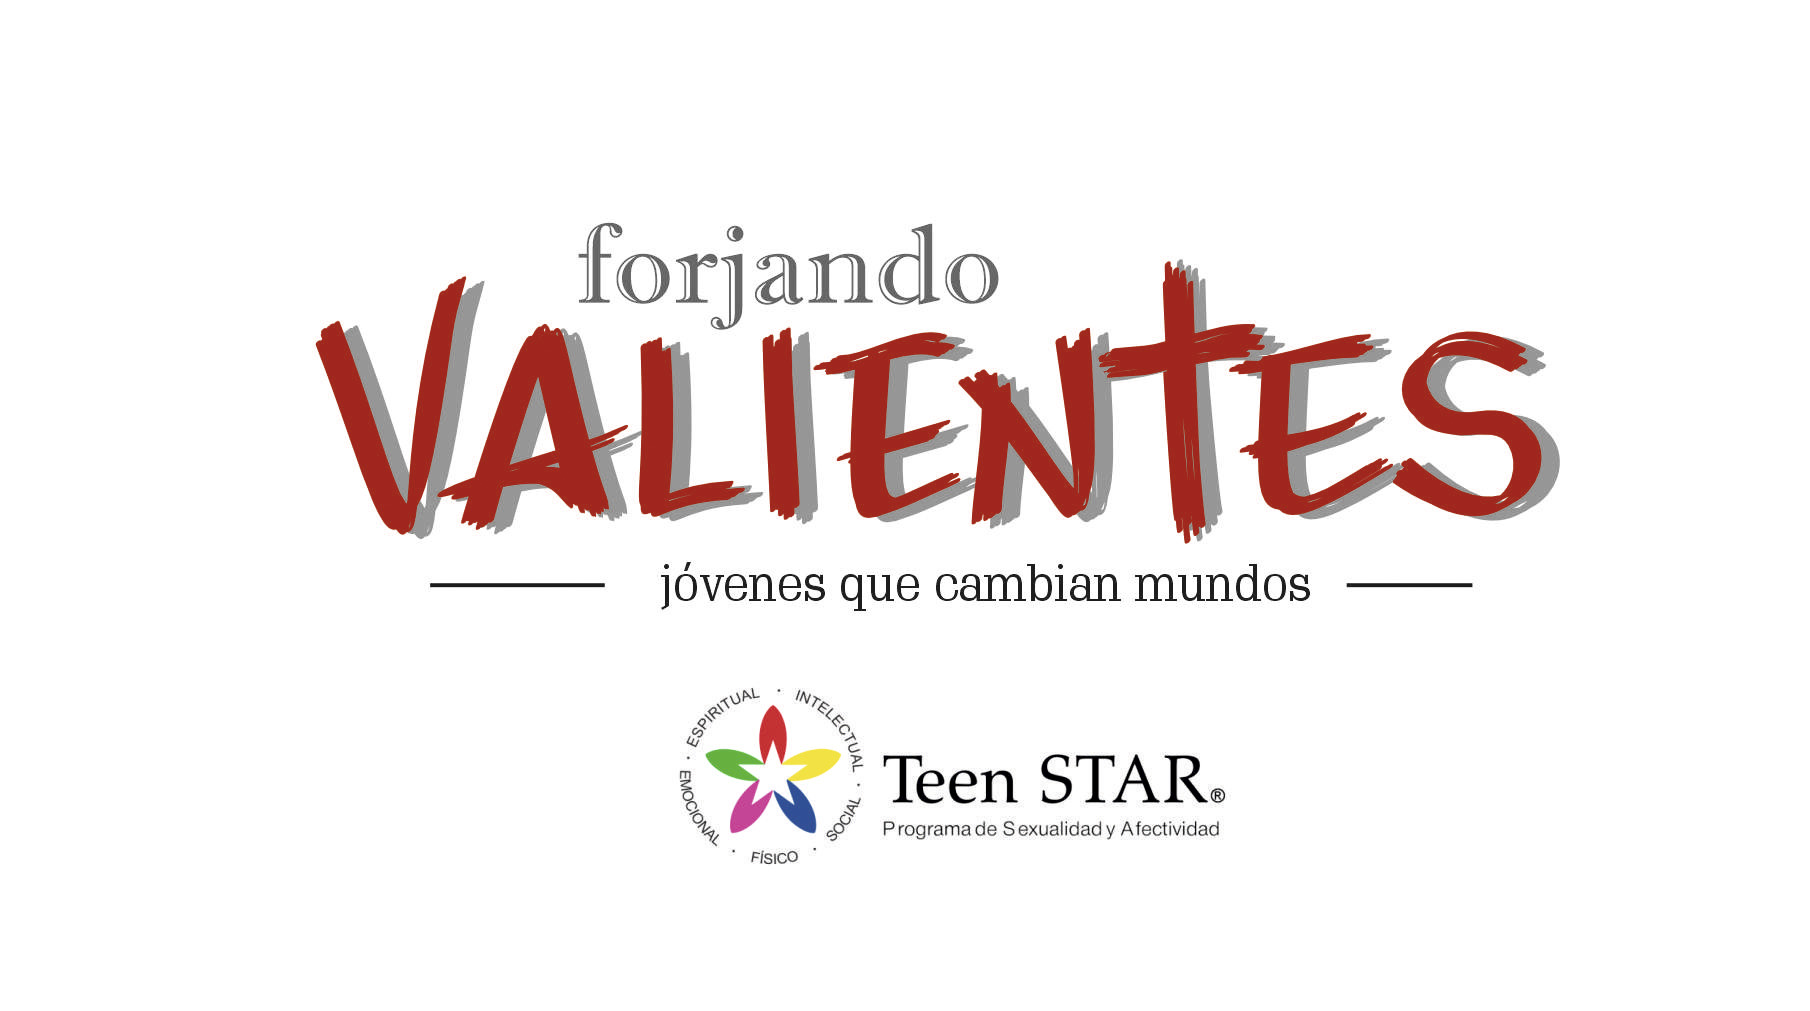 Presentación del Proyecto “Valientes TeenStar”